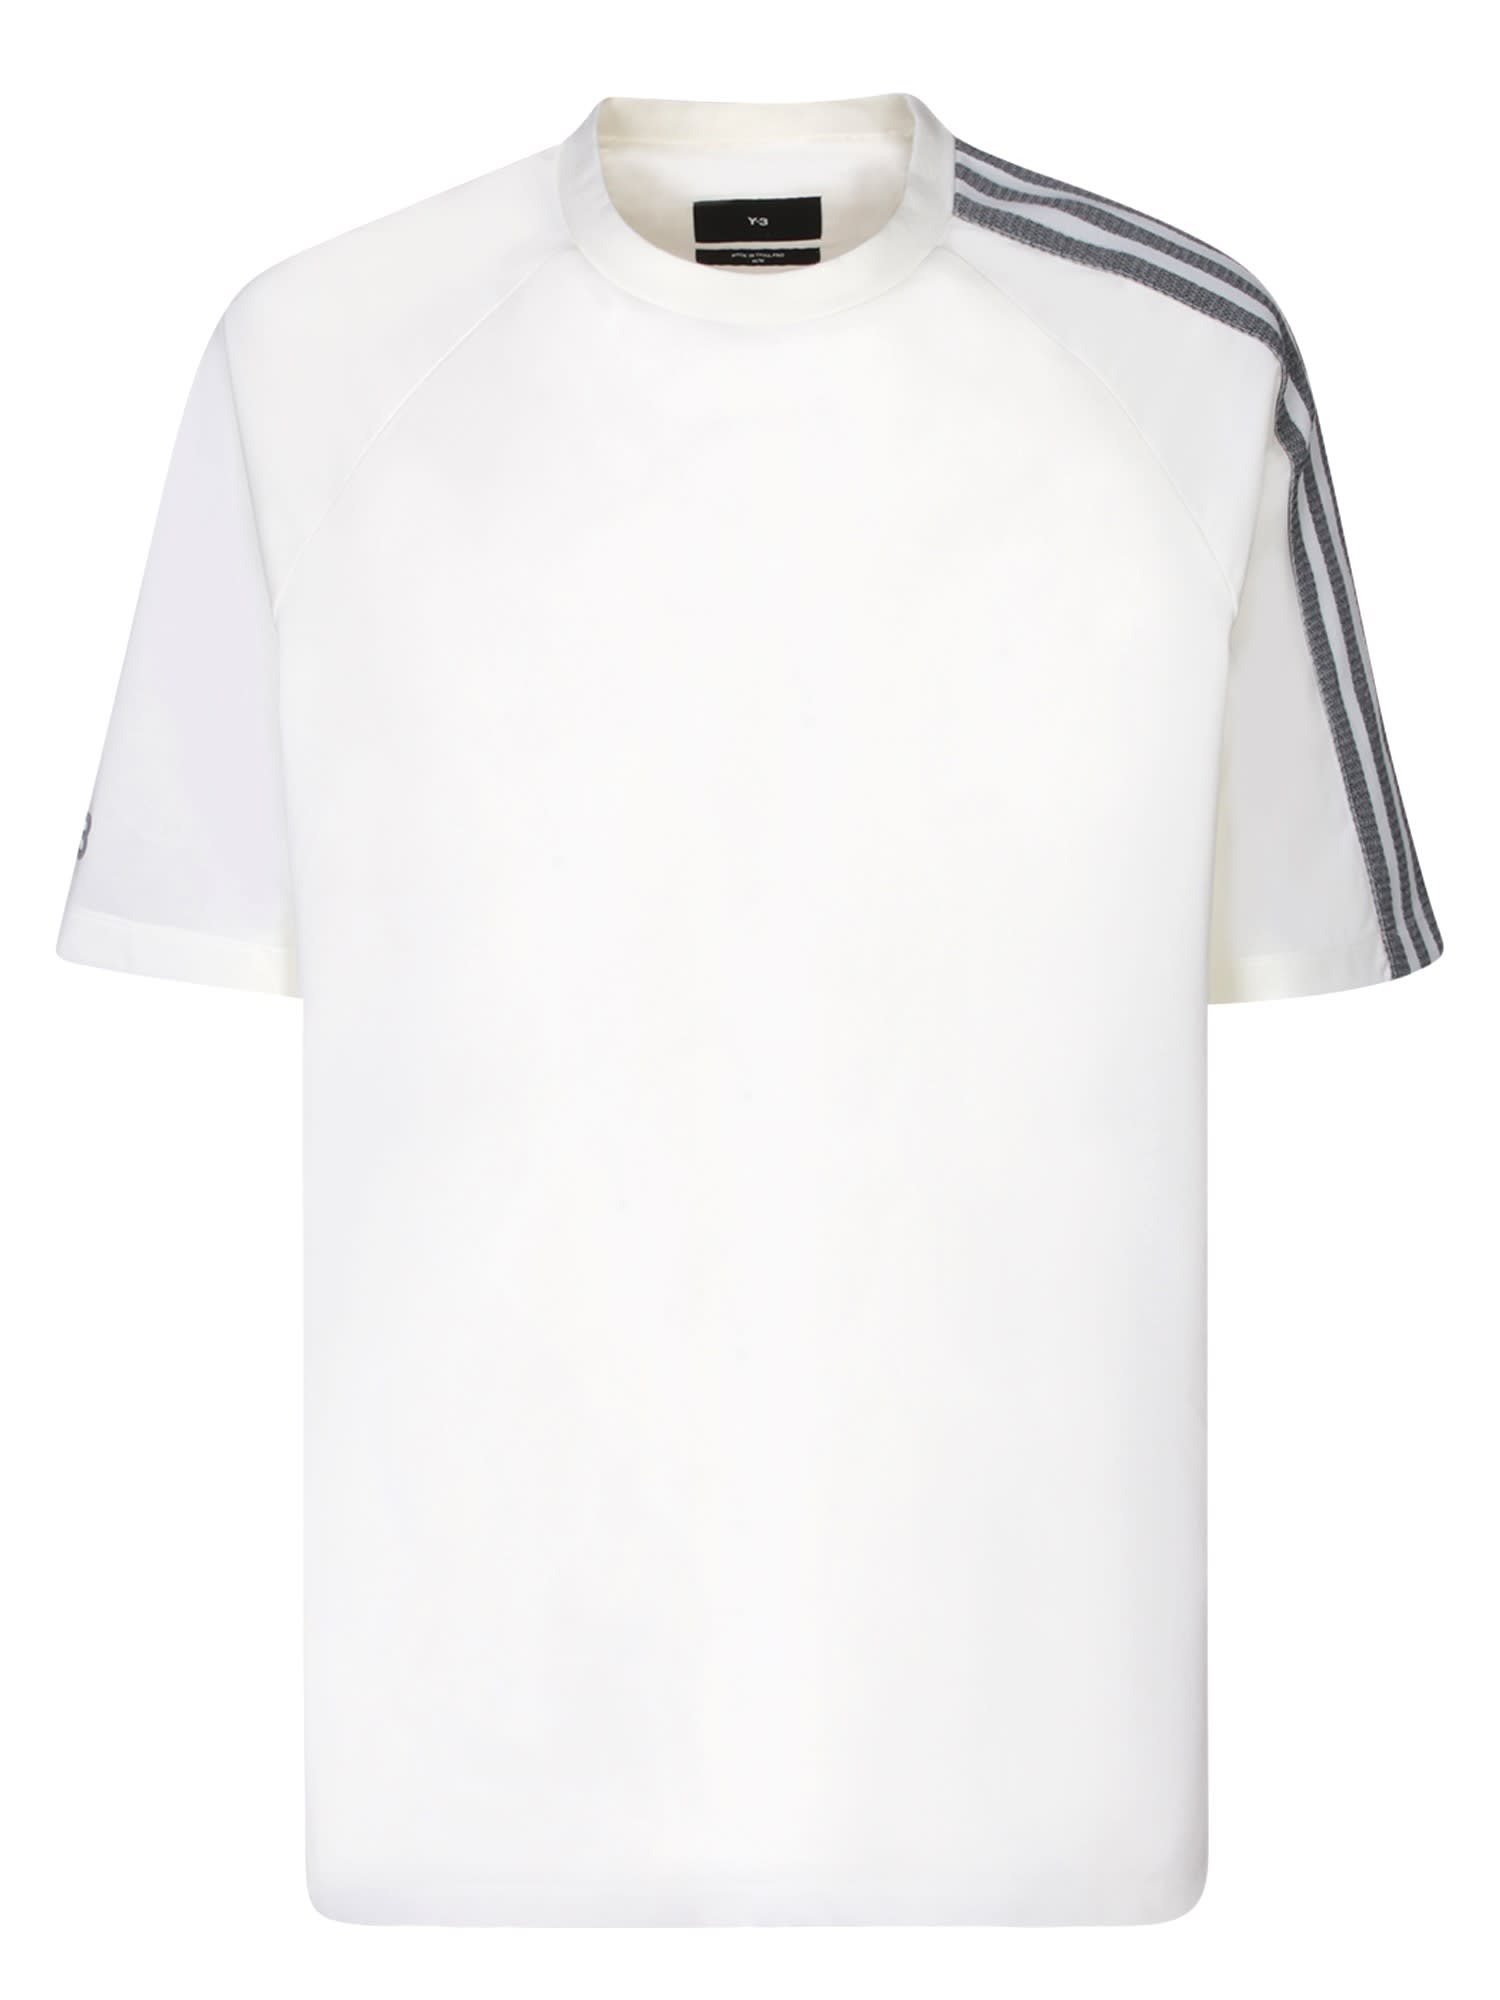 Adidas Y-3 3s White T-shirt